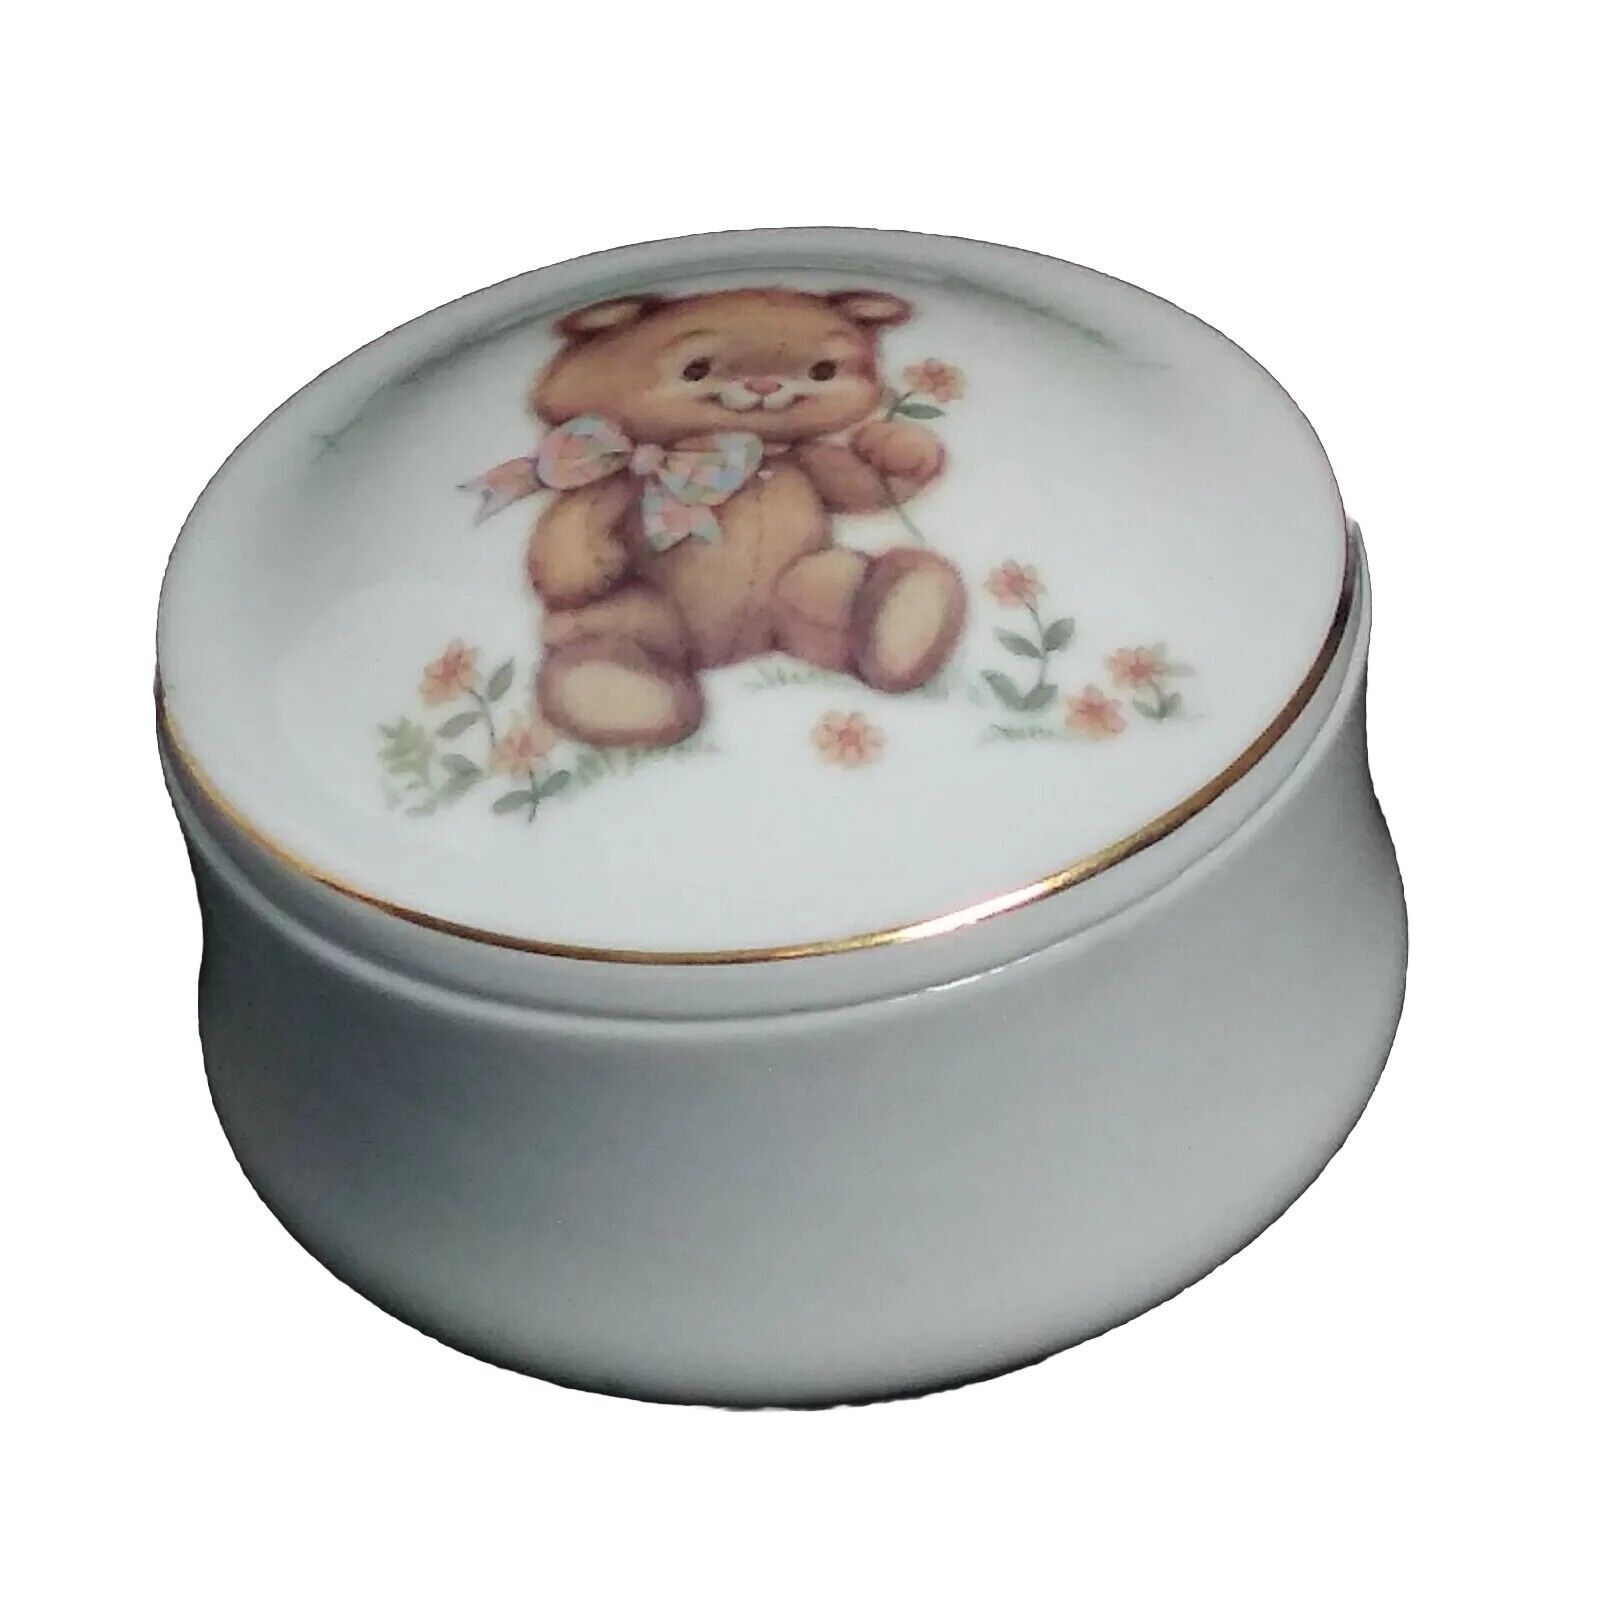 1980 Vtg LITTLE BLESSINGS TEDDY BEAR Porcelain Trinket Box Designers Collection